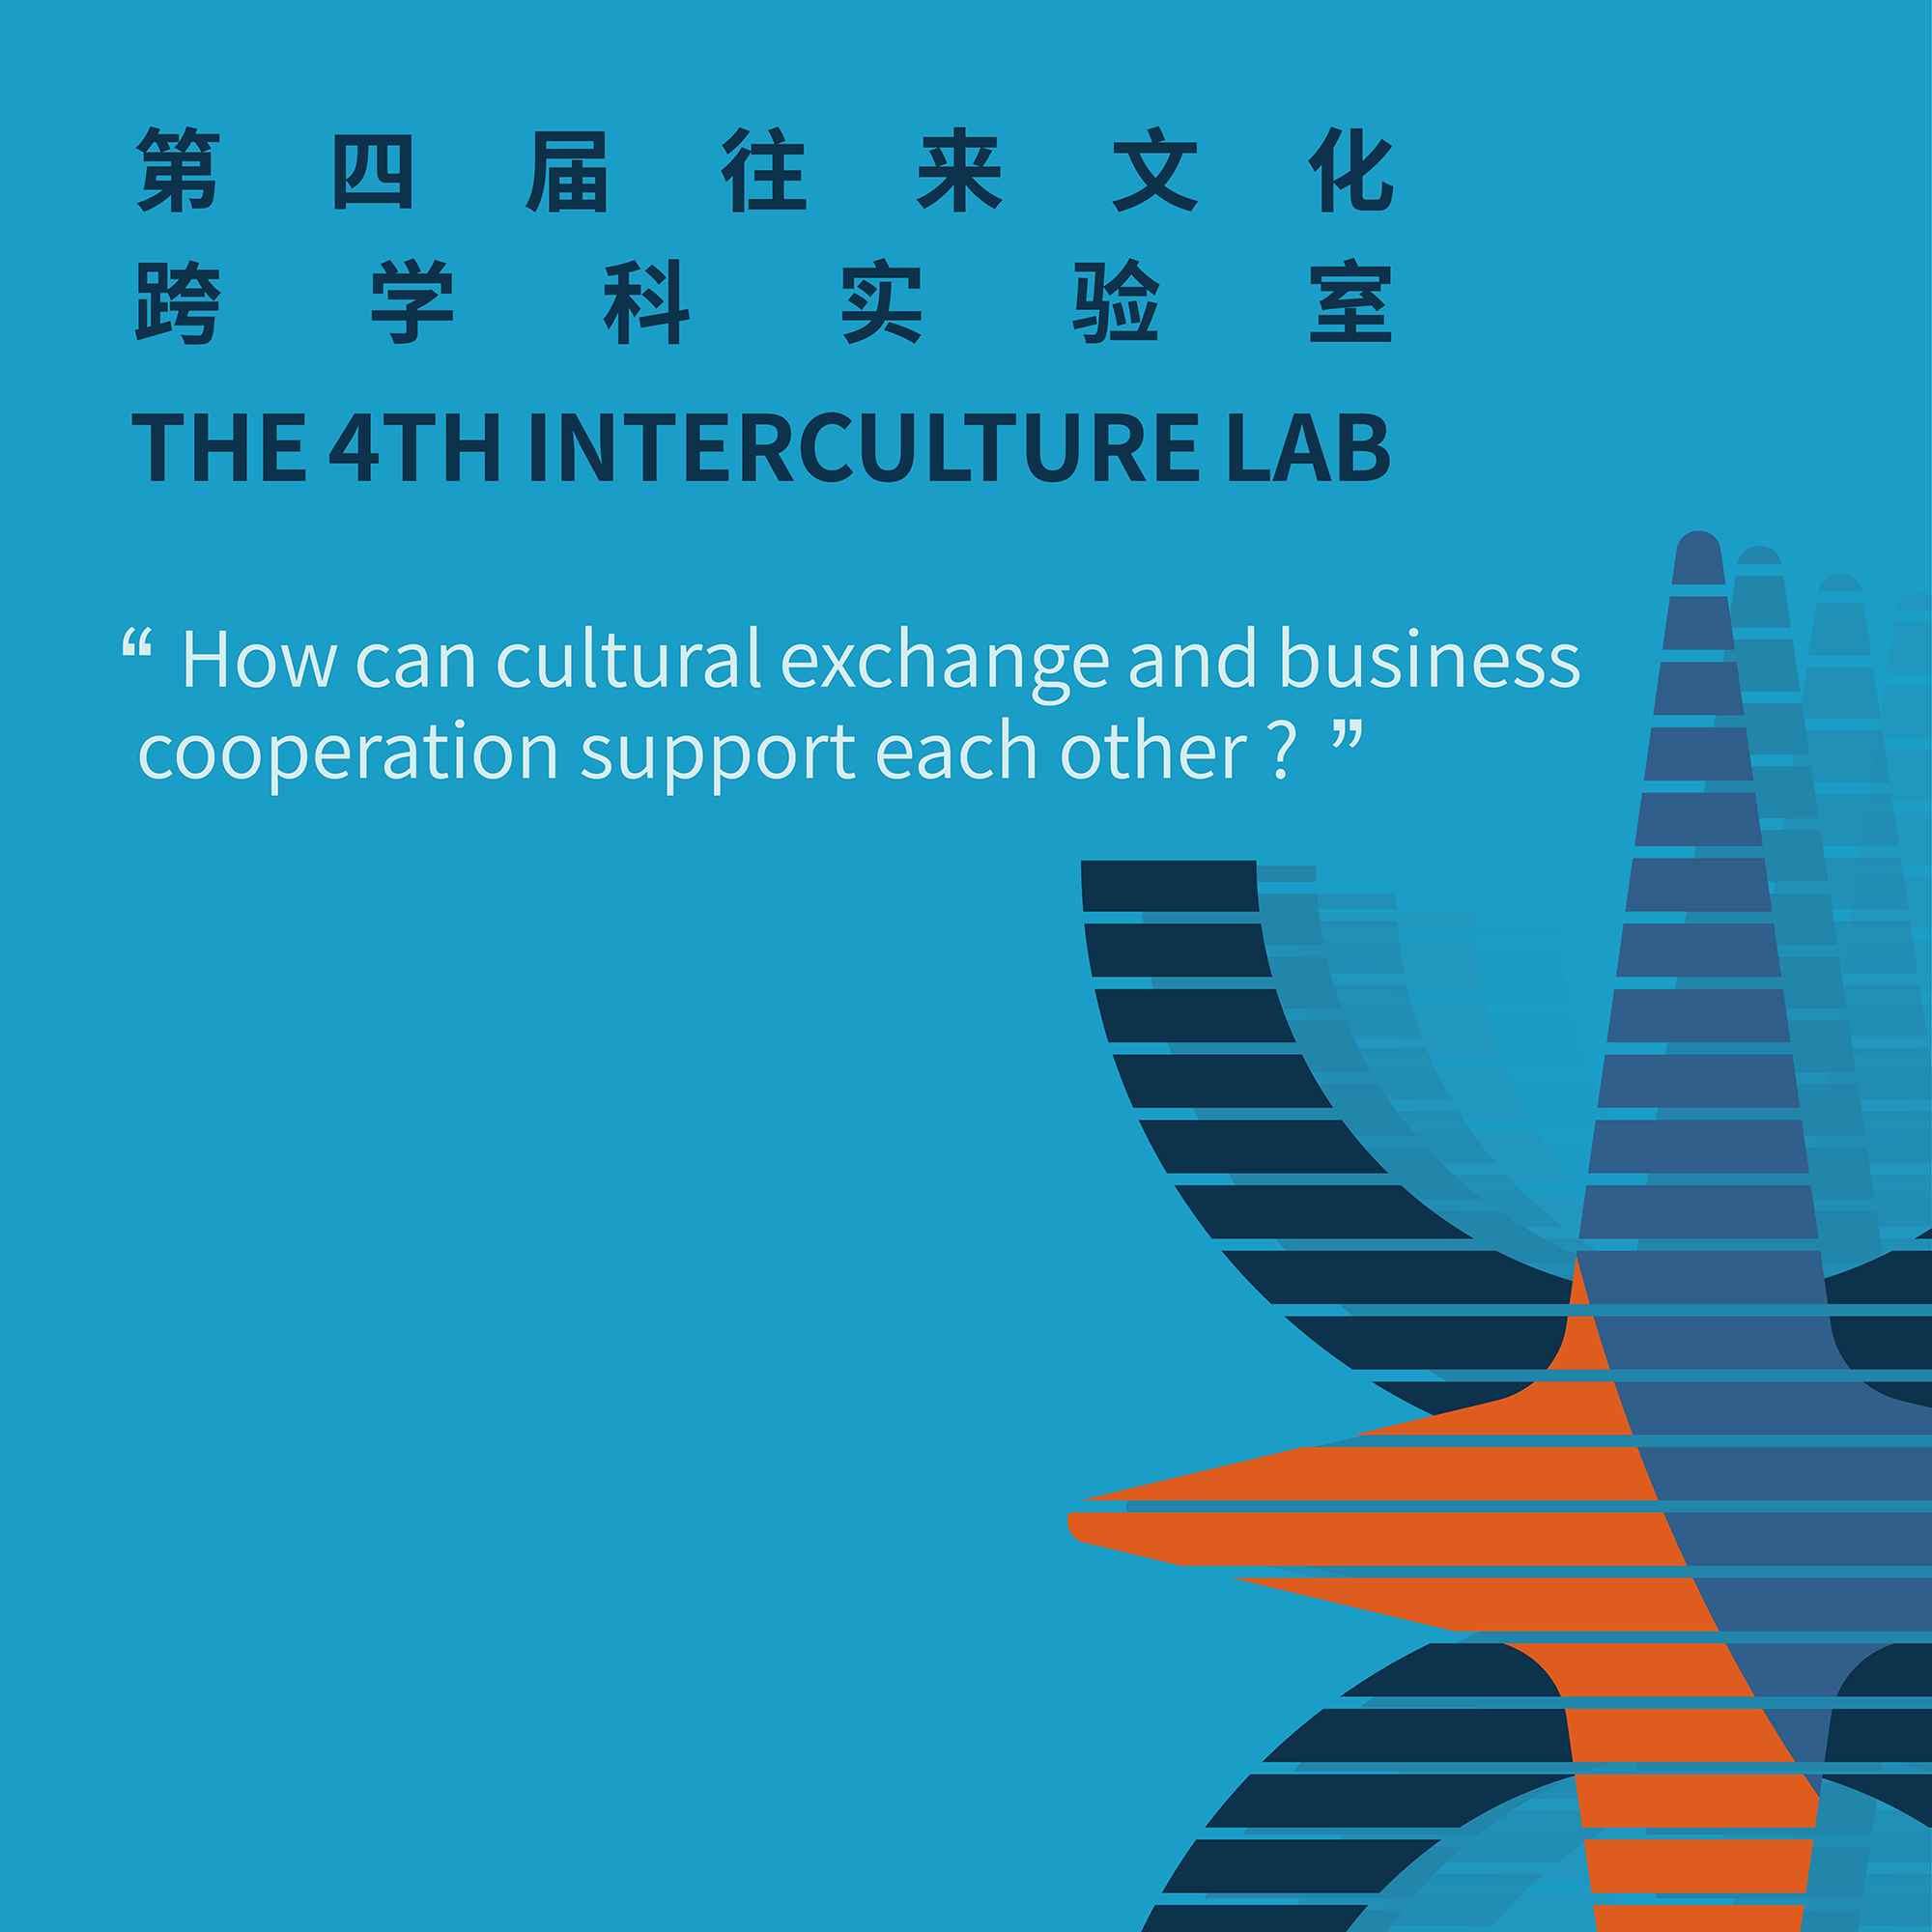 第四届往来文化跨学科实验室：文化和商业如何互相赋能？